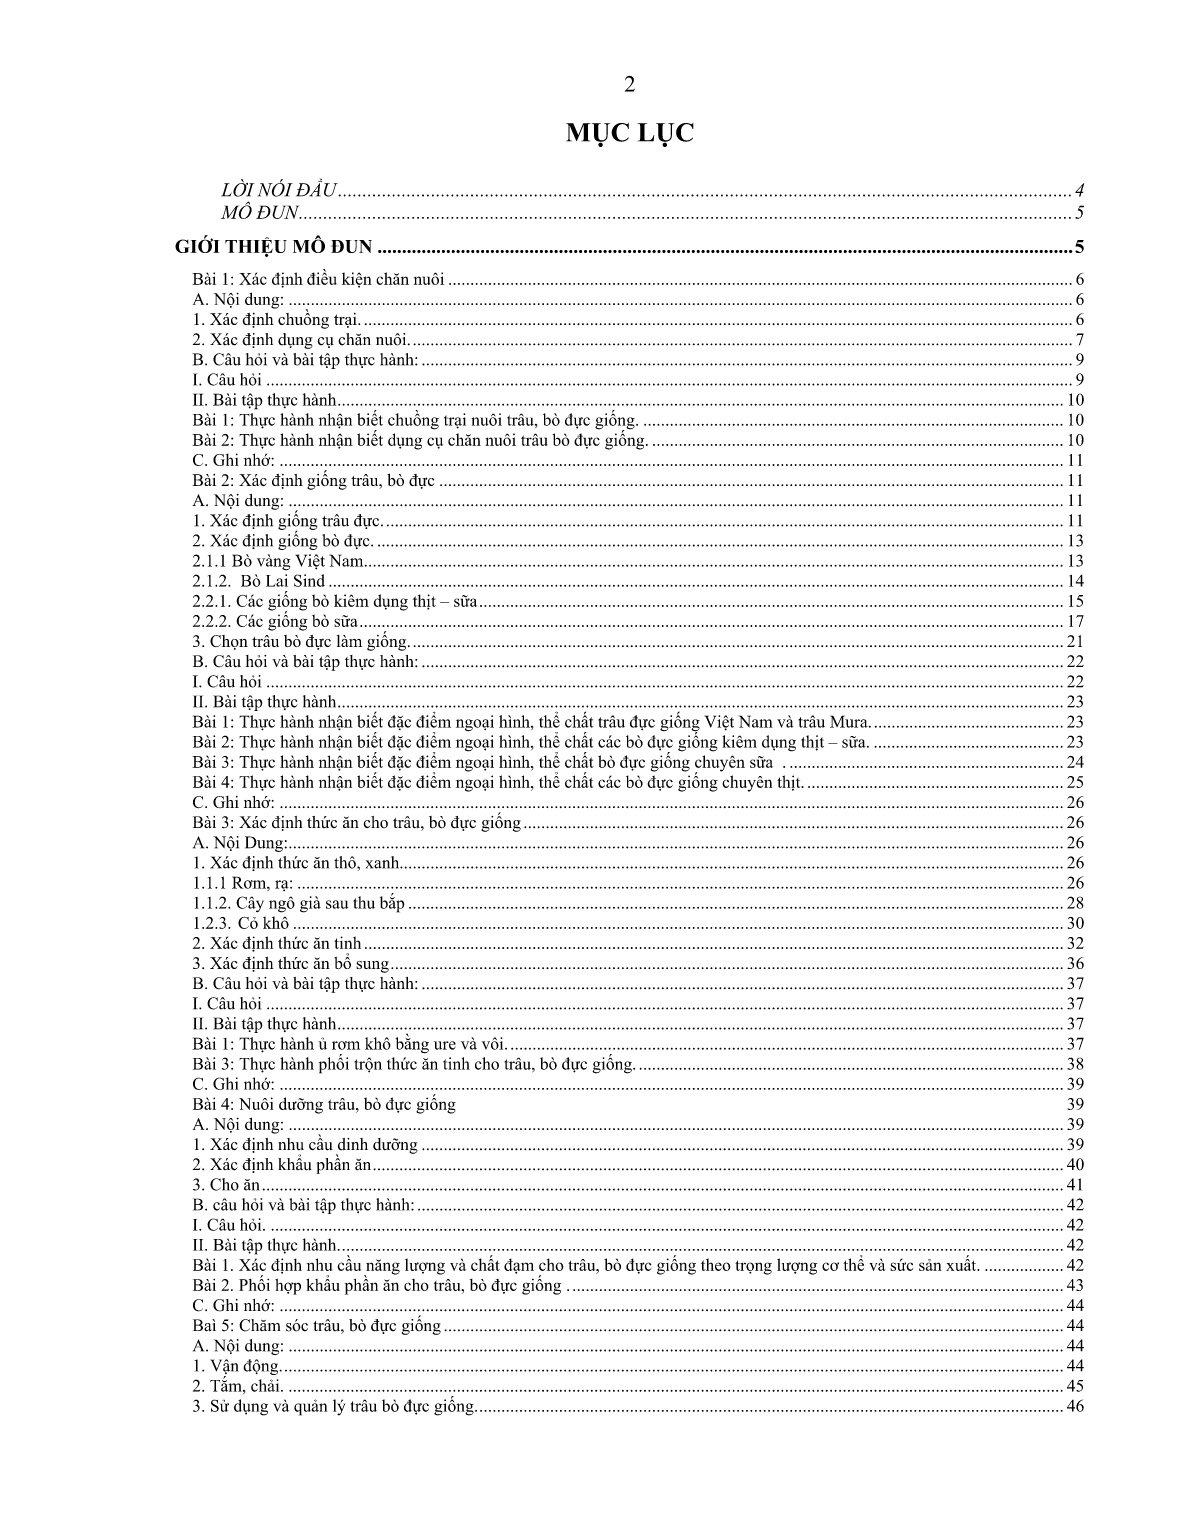 Giáo trình mô đun Nuôi trâu, bò đực giống (Trình độ: Sơ cấp nghề) trang 3